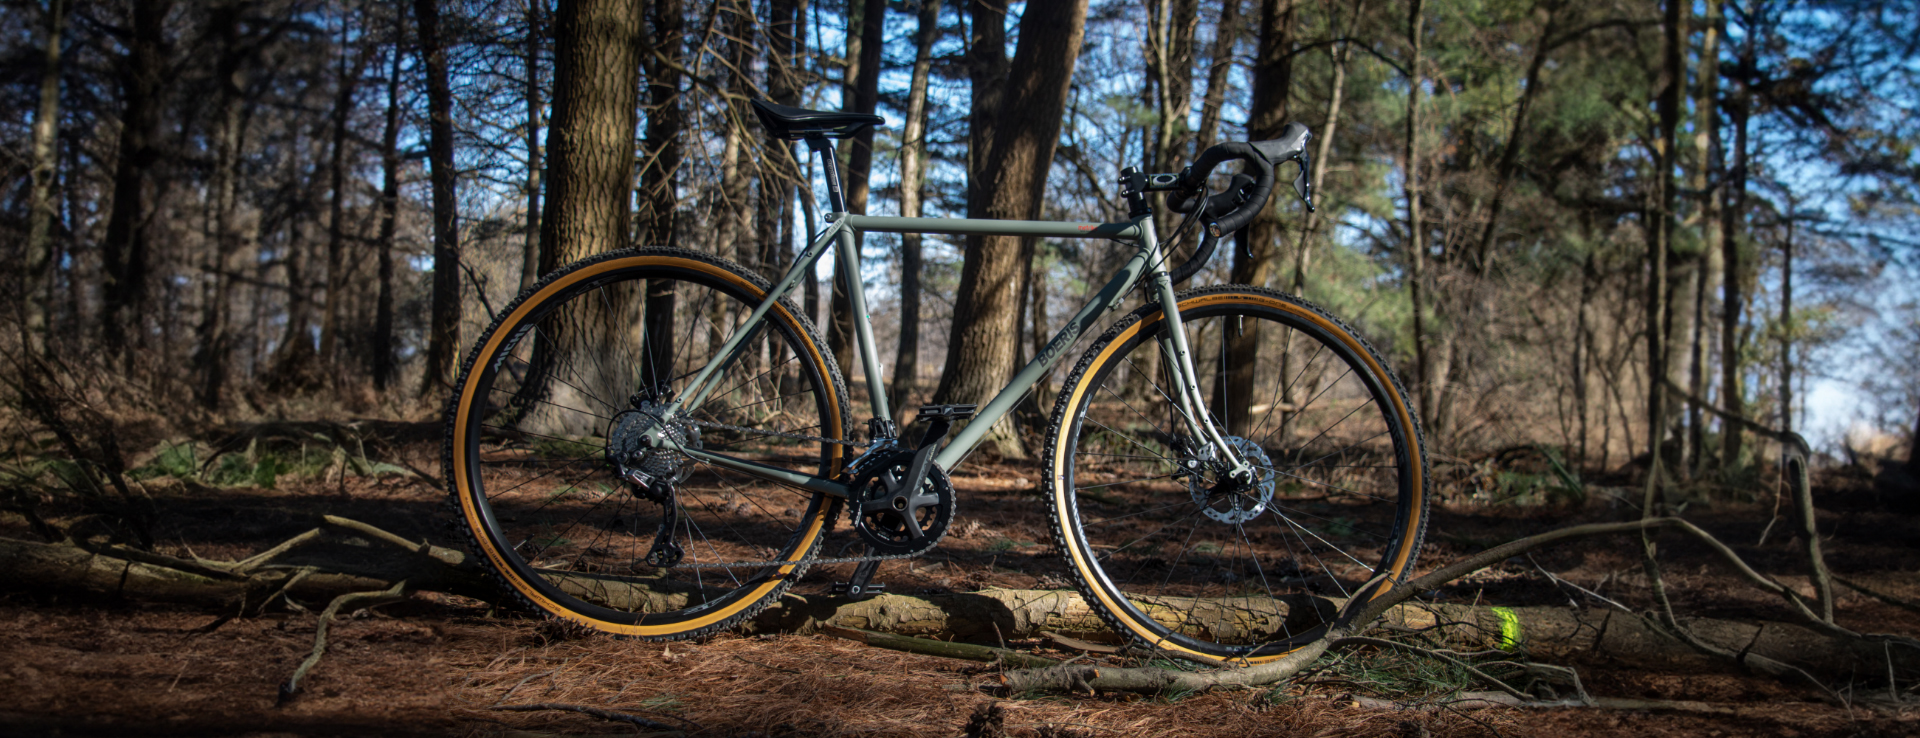 boeris bikes torino gravel serie x-performance bici in acciaio fotografata in un bosco. foto outdoor